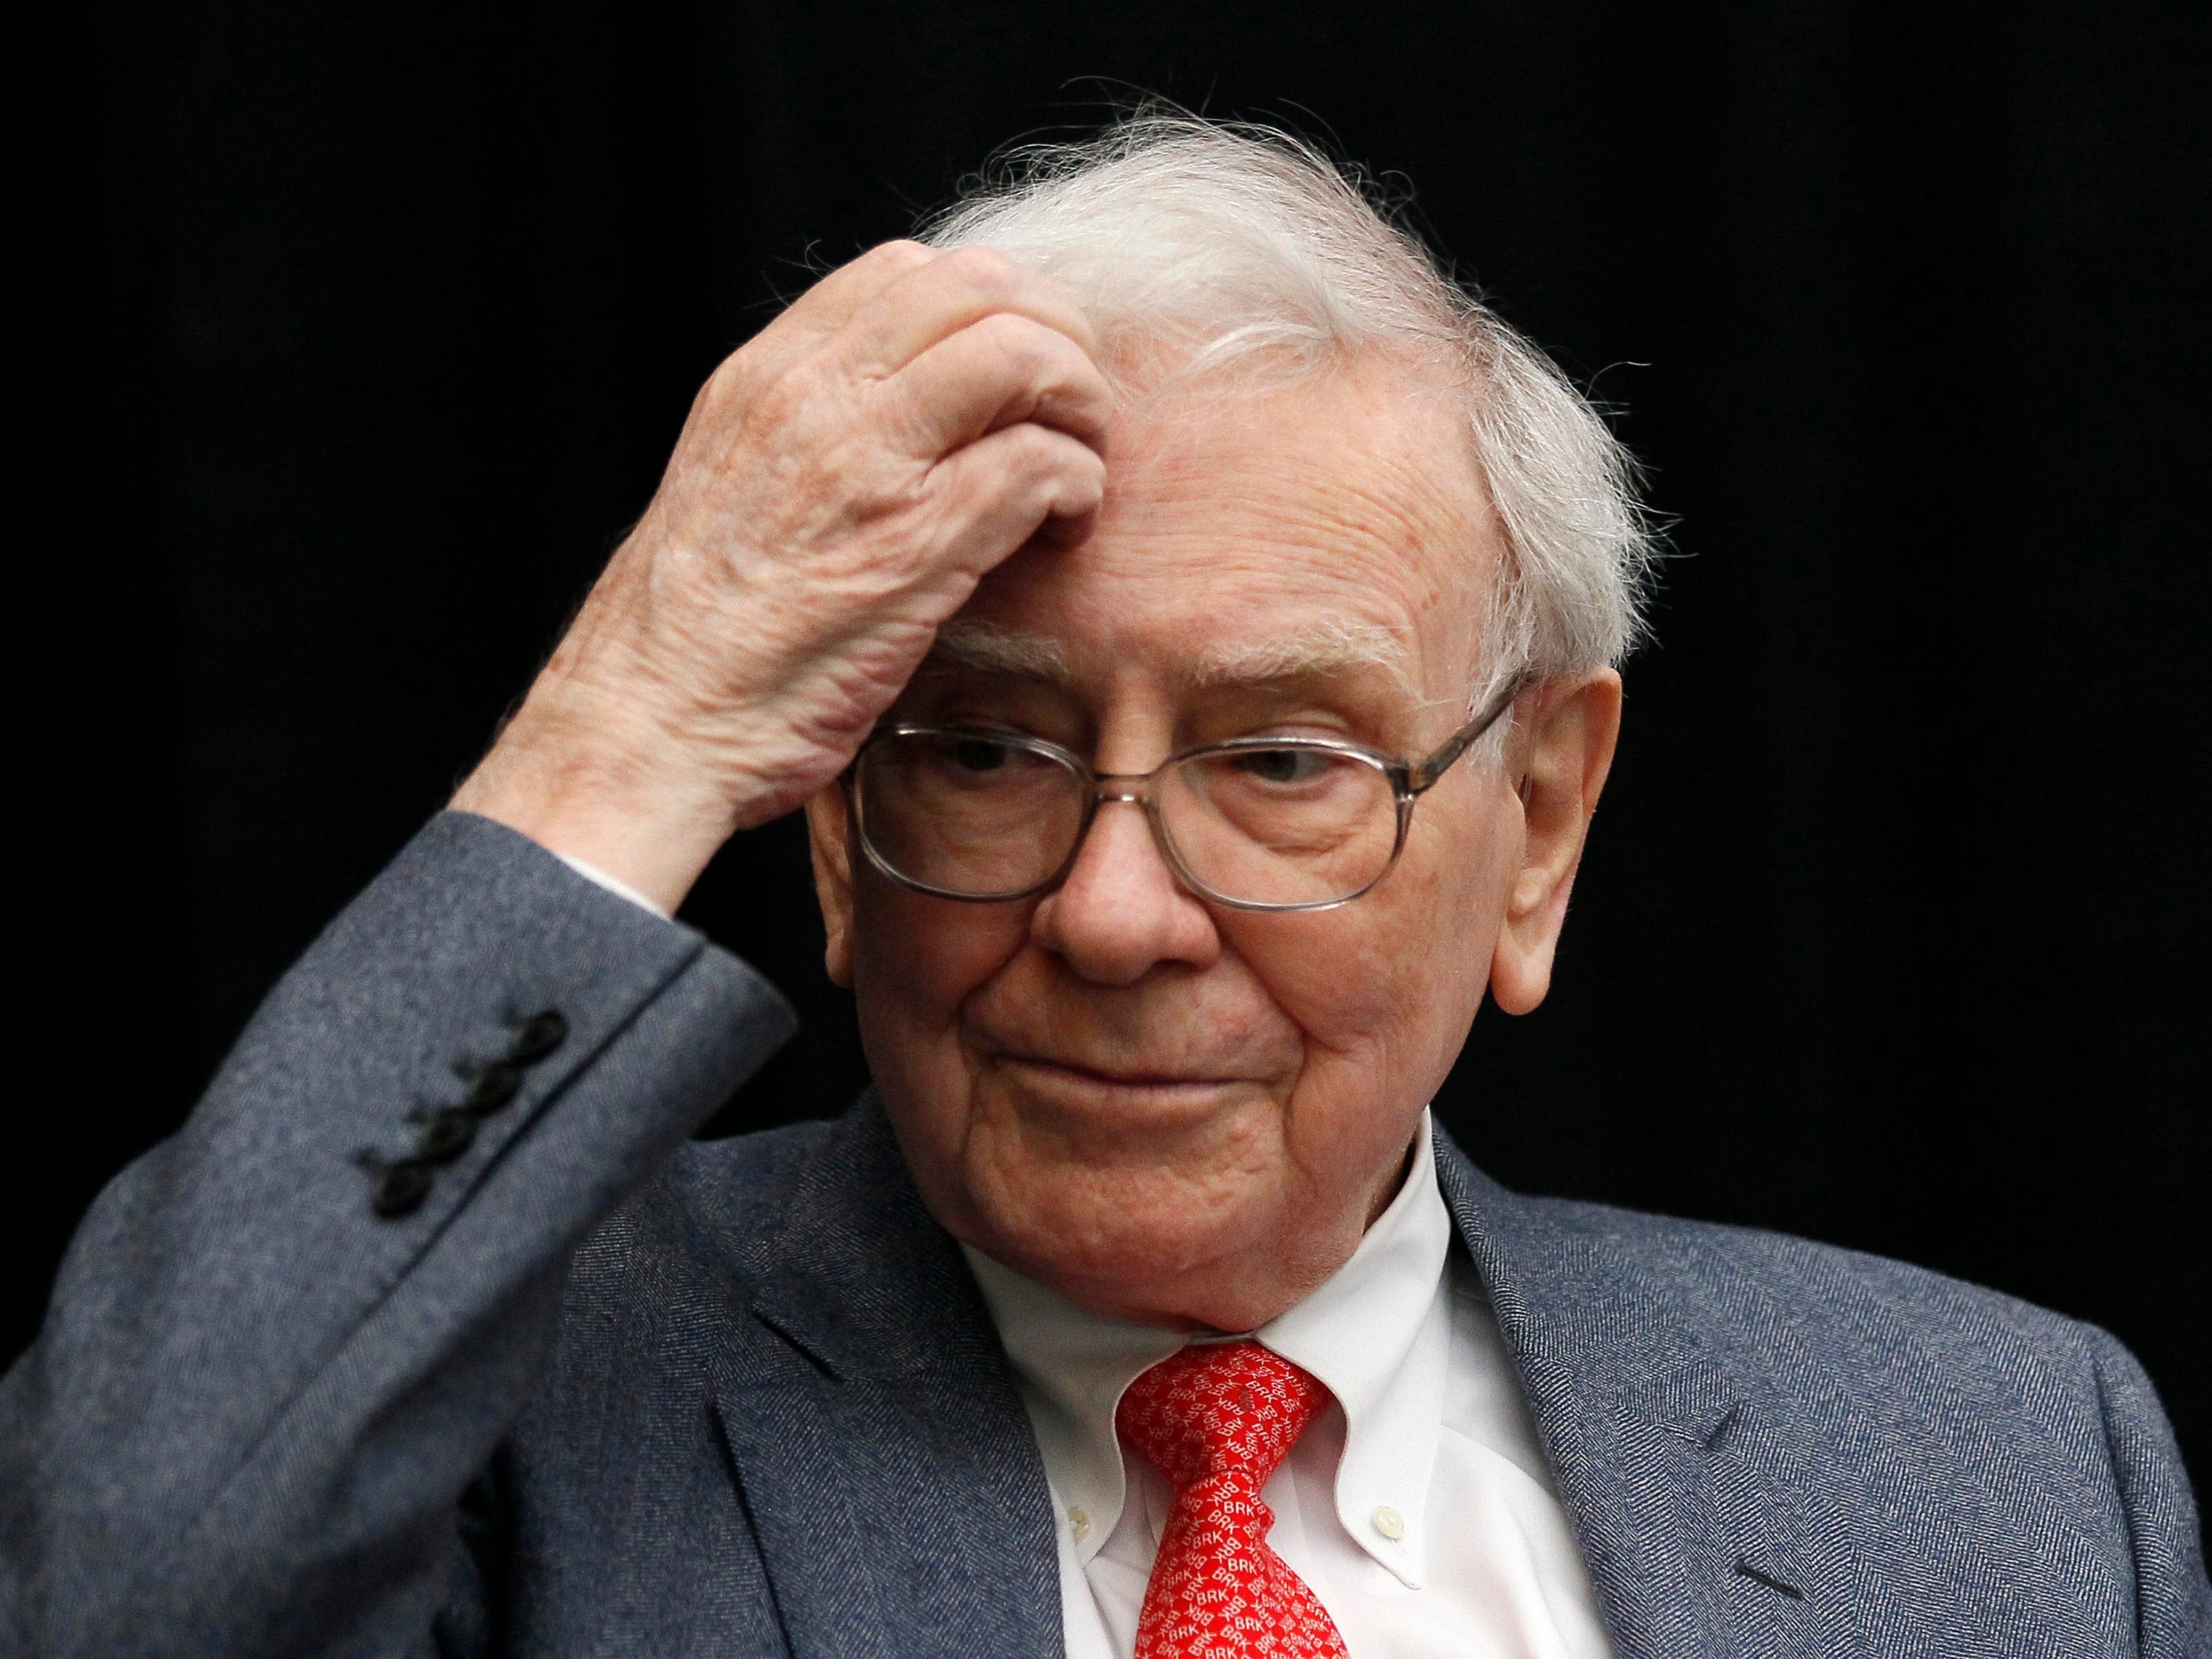 Warren Buffett is hoarding $200 billion as he may see 'storm clouds' ahead, says top economist Steve Hanke